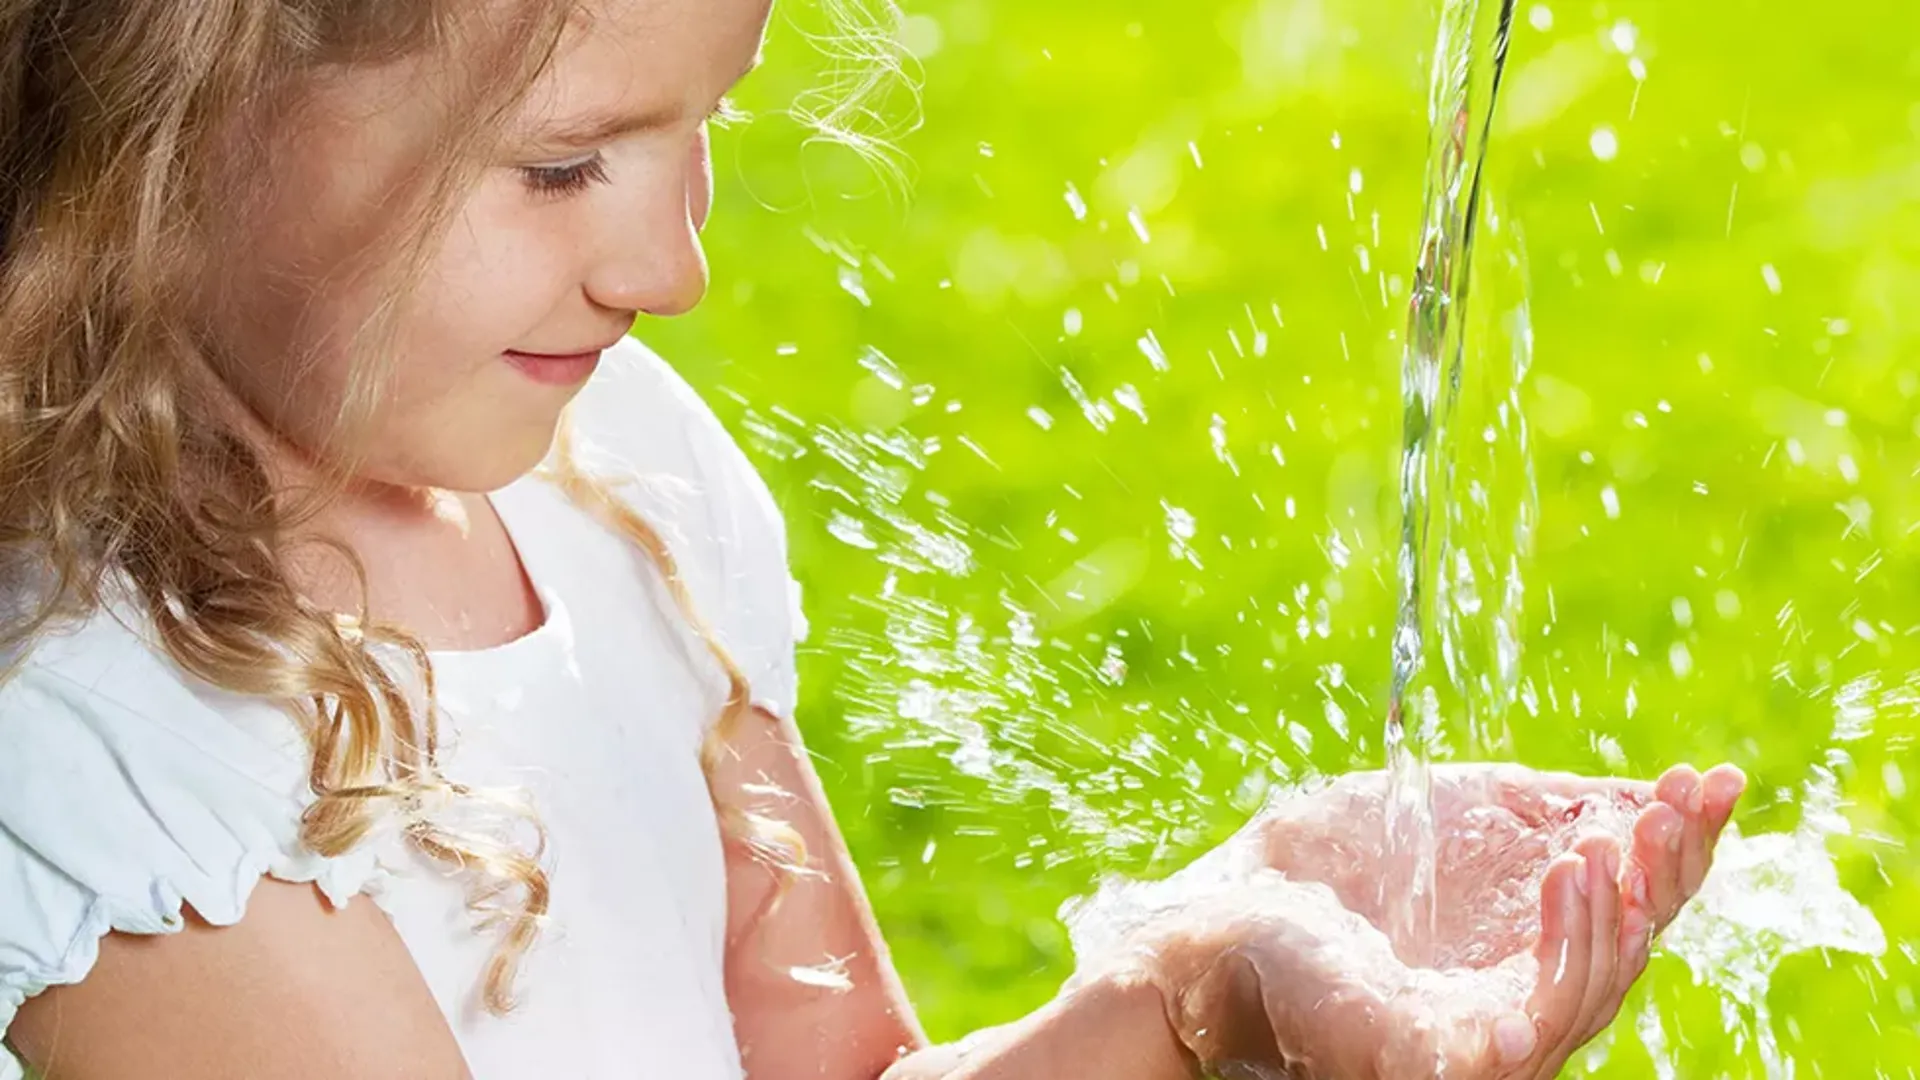 Flicka tar emot vatten i kupade händer